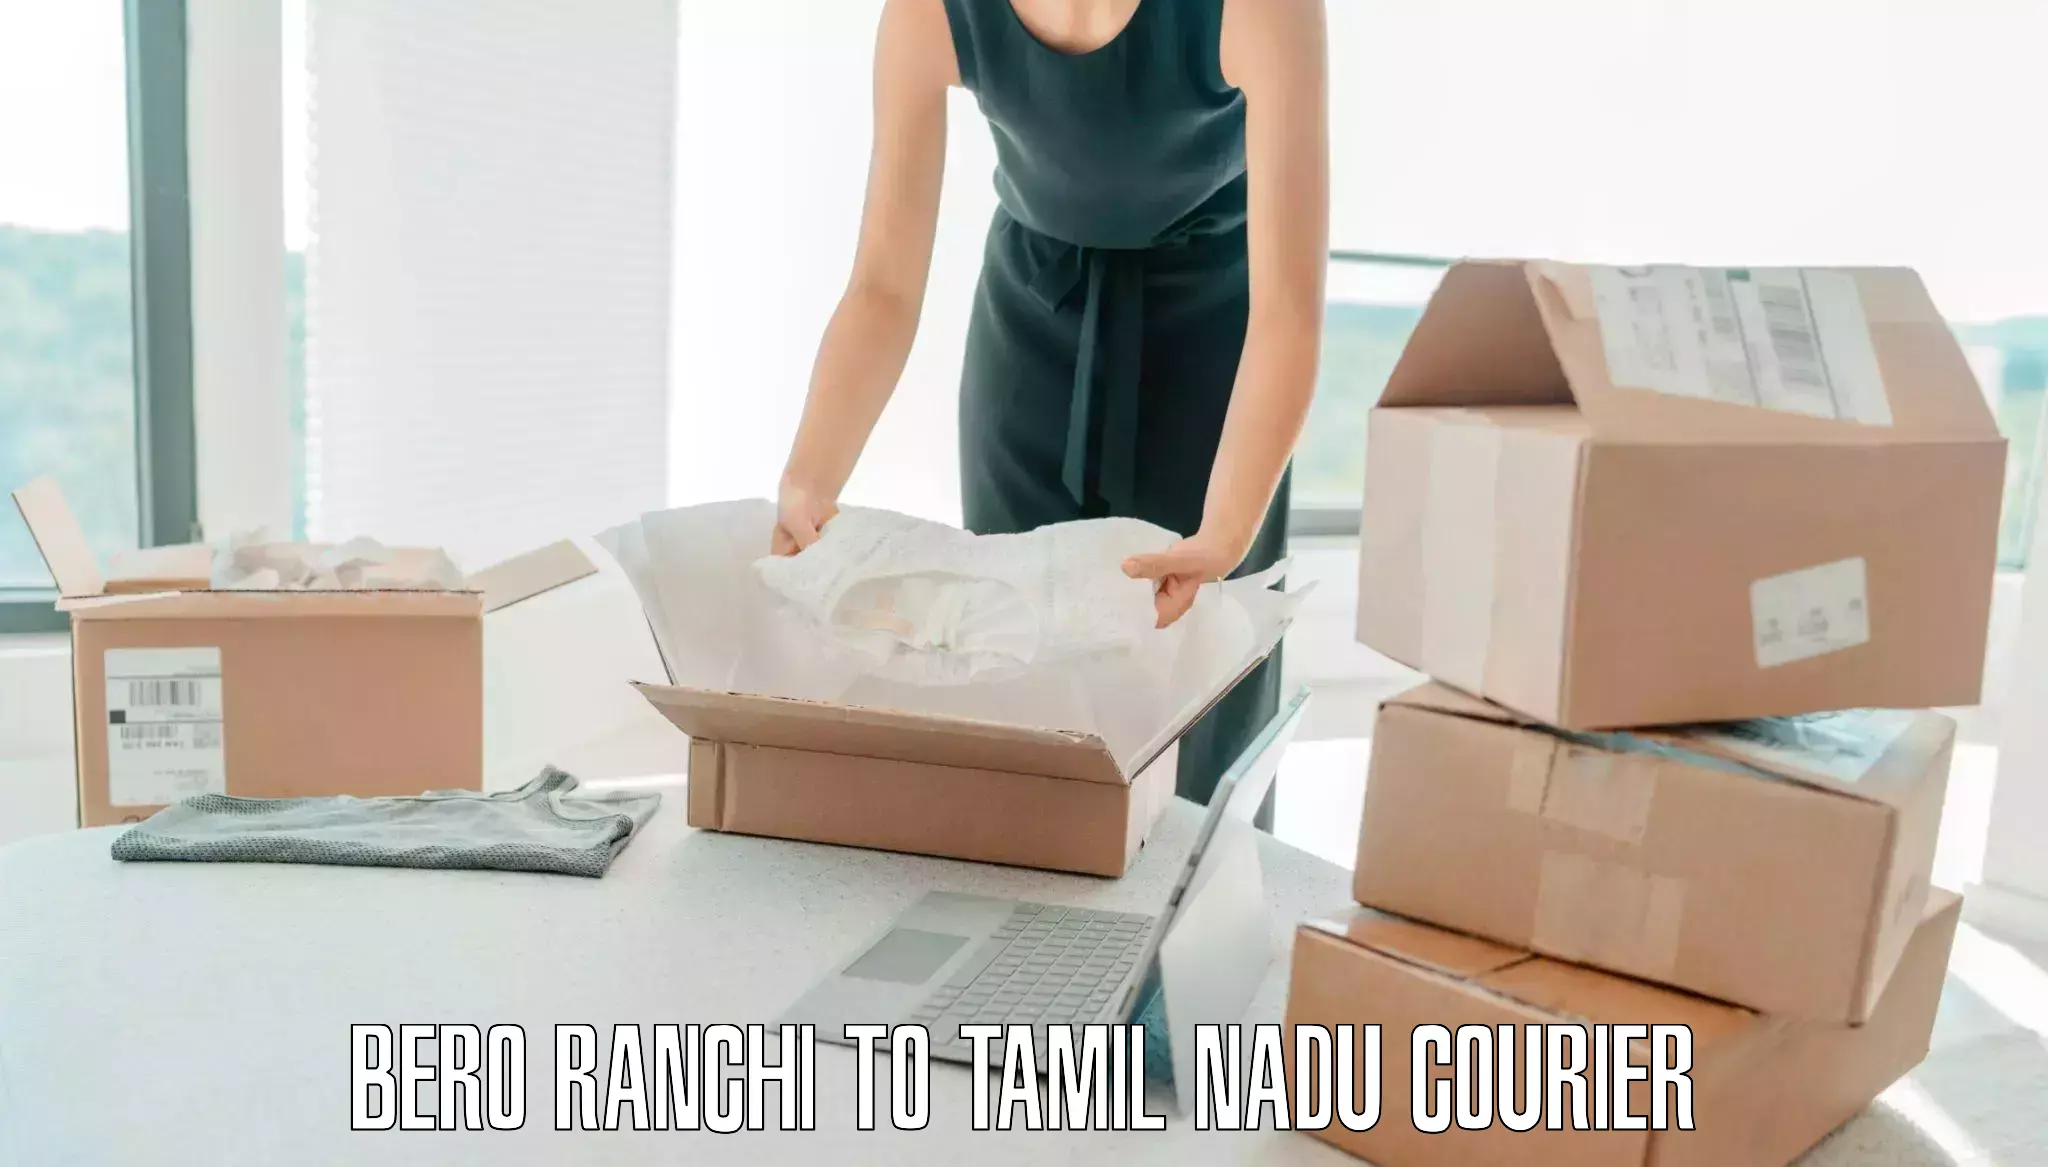 Luggage transport service Bero Ranchi to Lalgudi